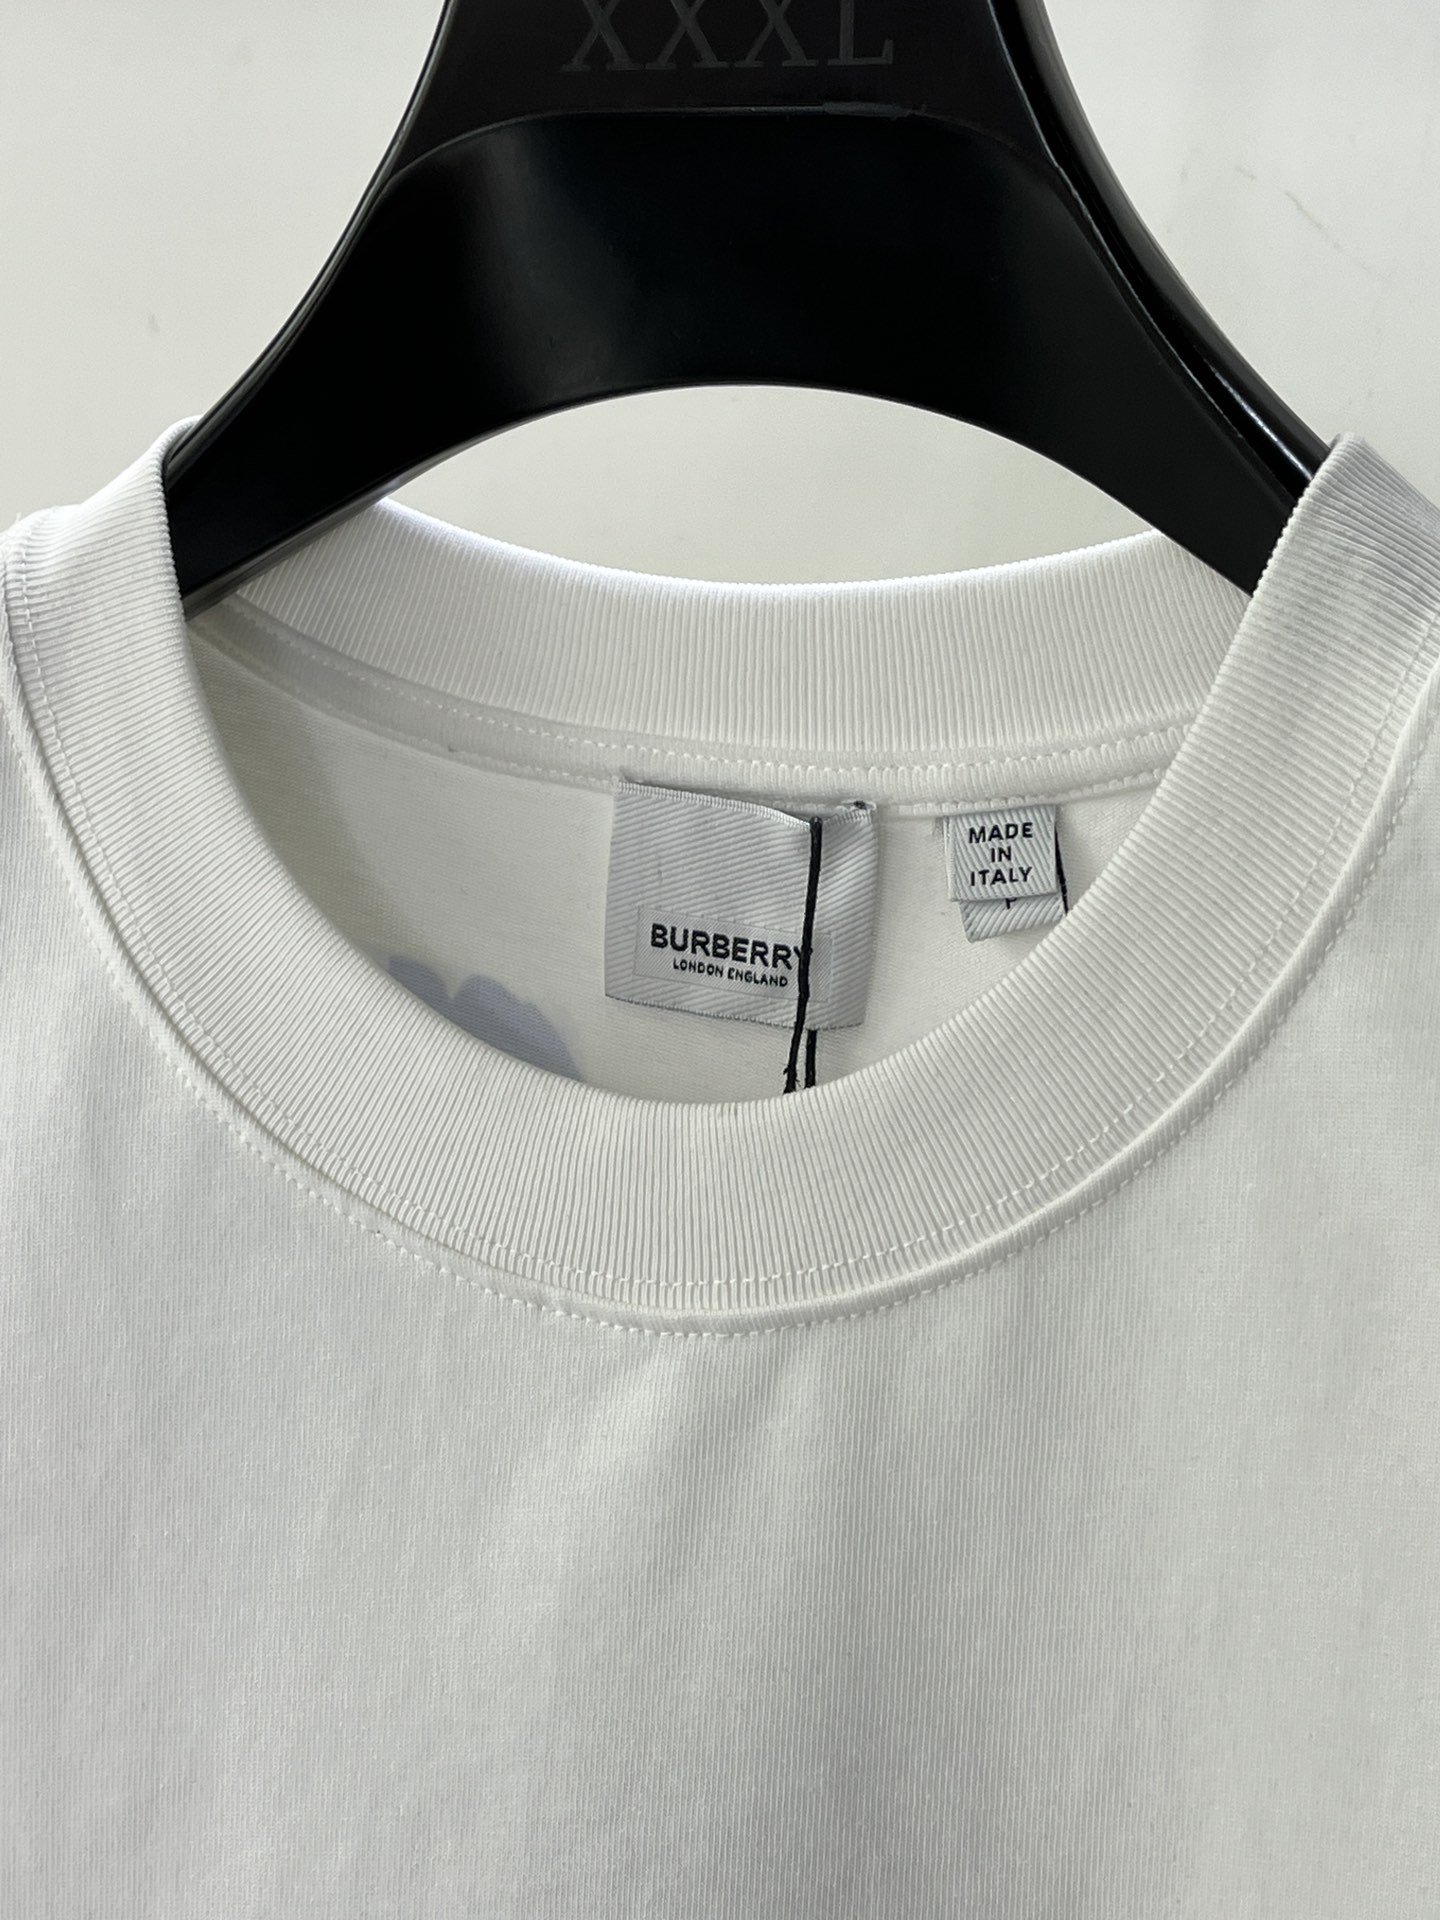 BBRSS春夏新款短袖T恤专柜同步发售原版复刻一比一定制原版面料五金简约大气时间前卫值得信任WW尺码推荐